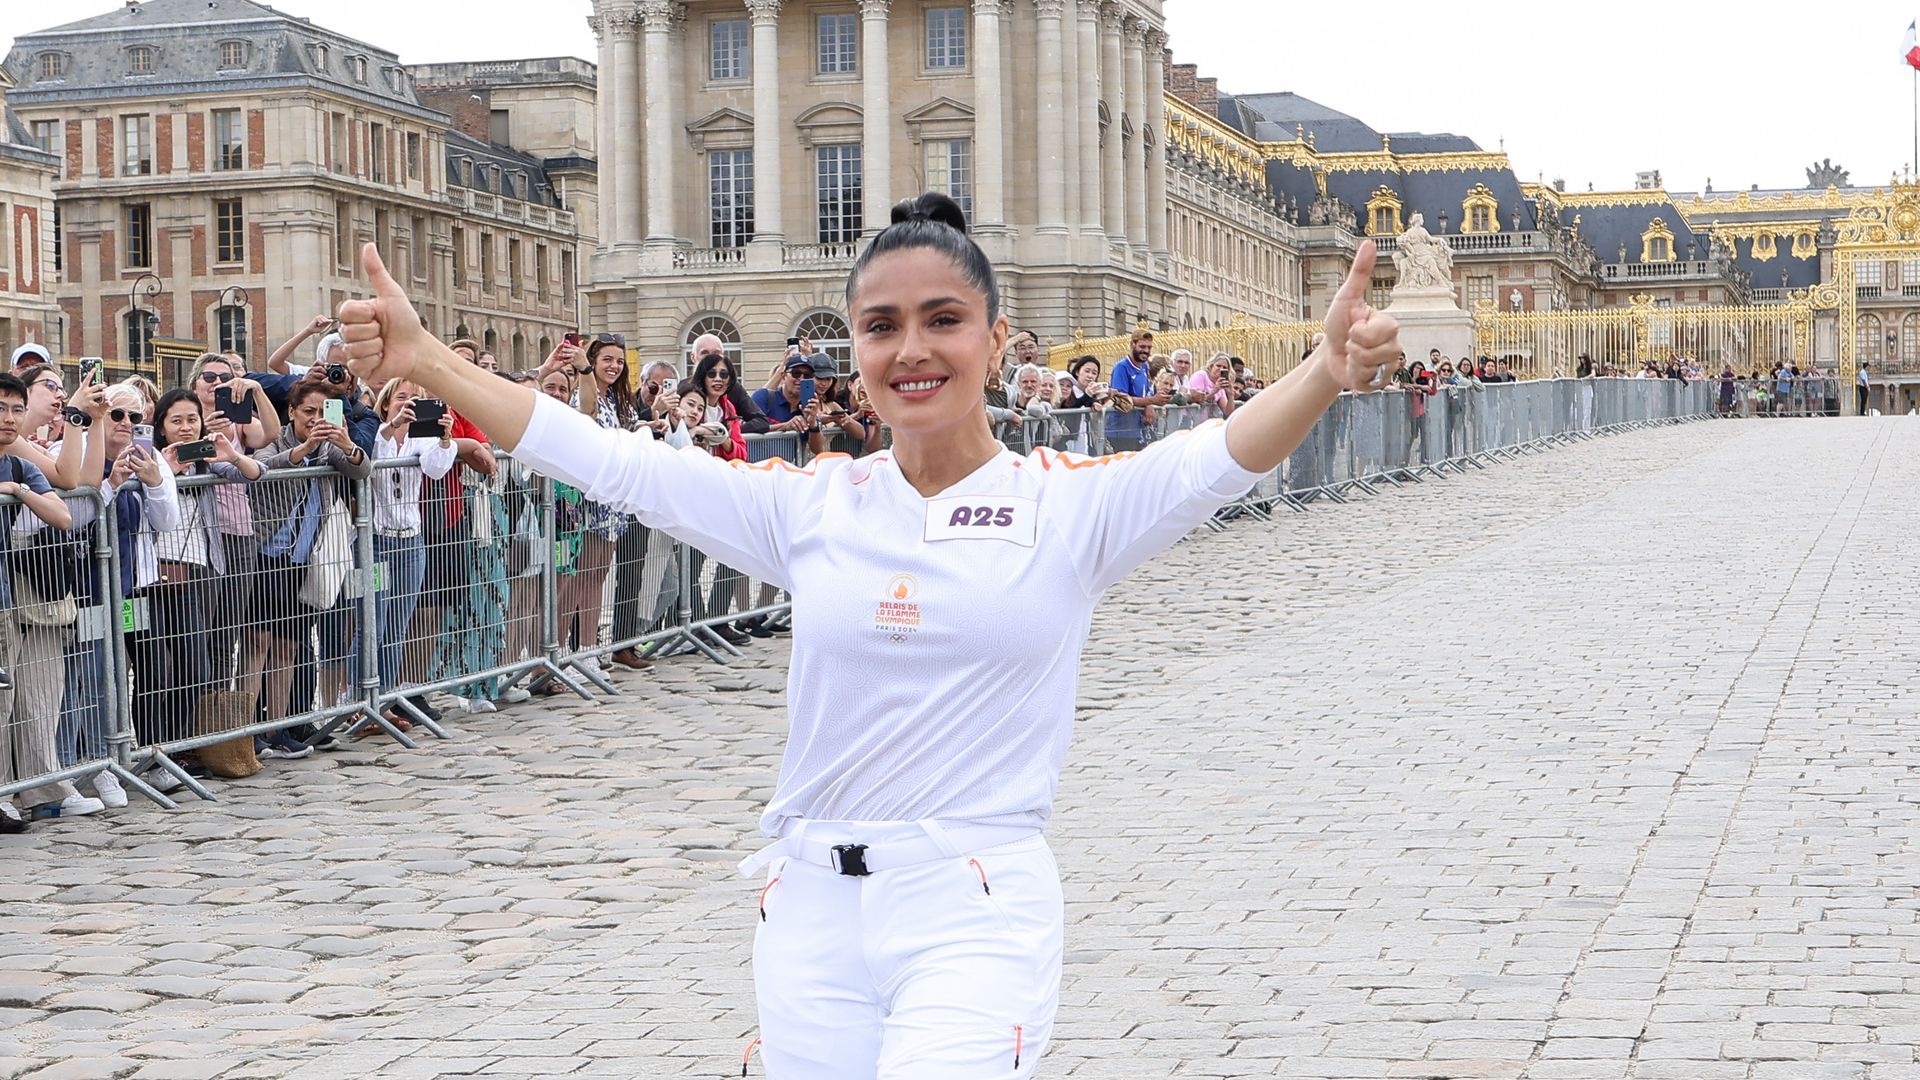 Con orgullo, Salma Hayek porta la antorcha olímpica en el Palacio de Versalles